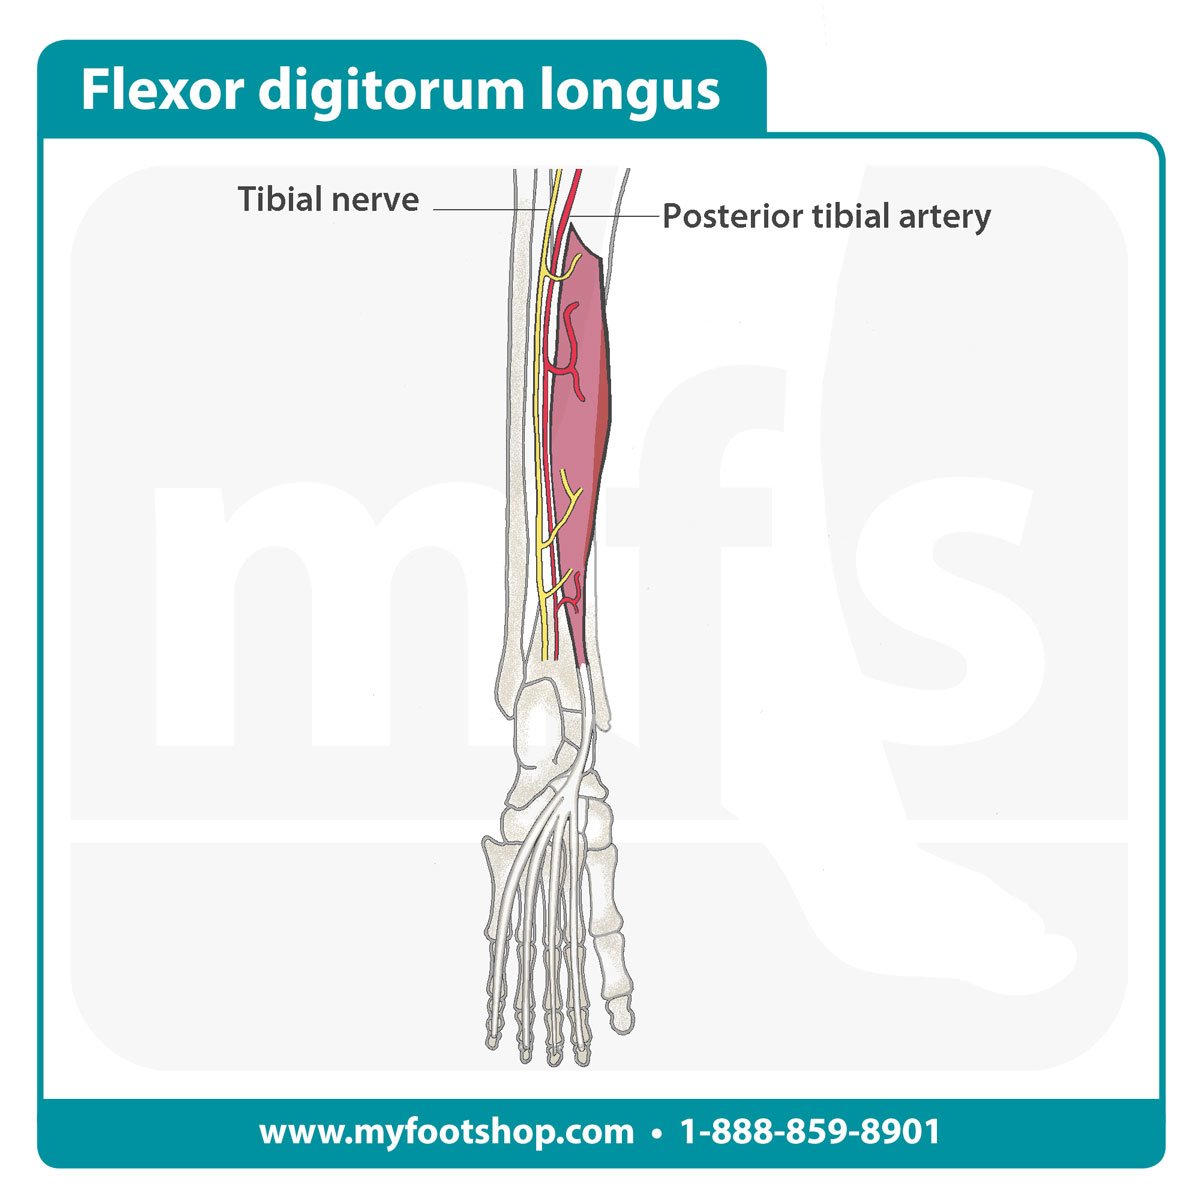 Flexor digitorum longus